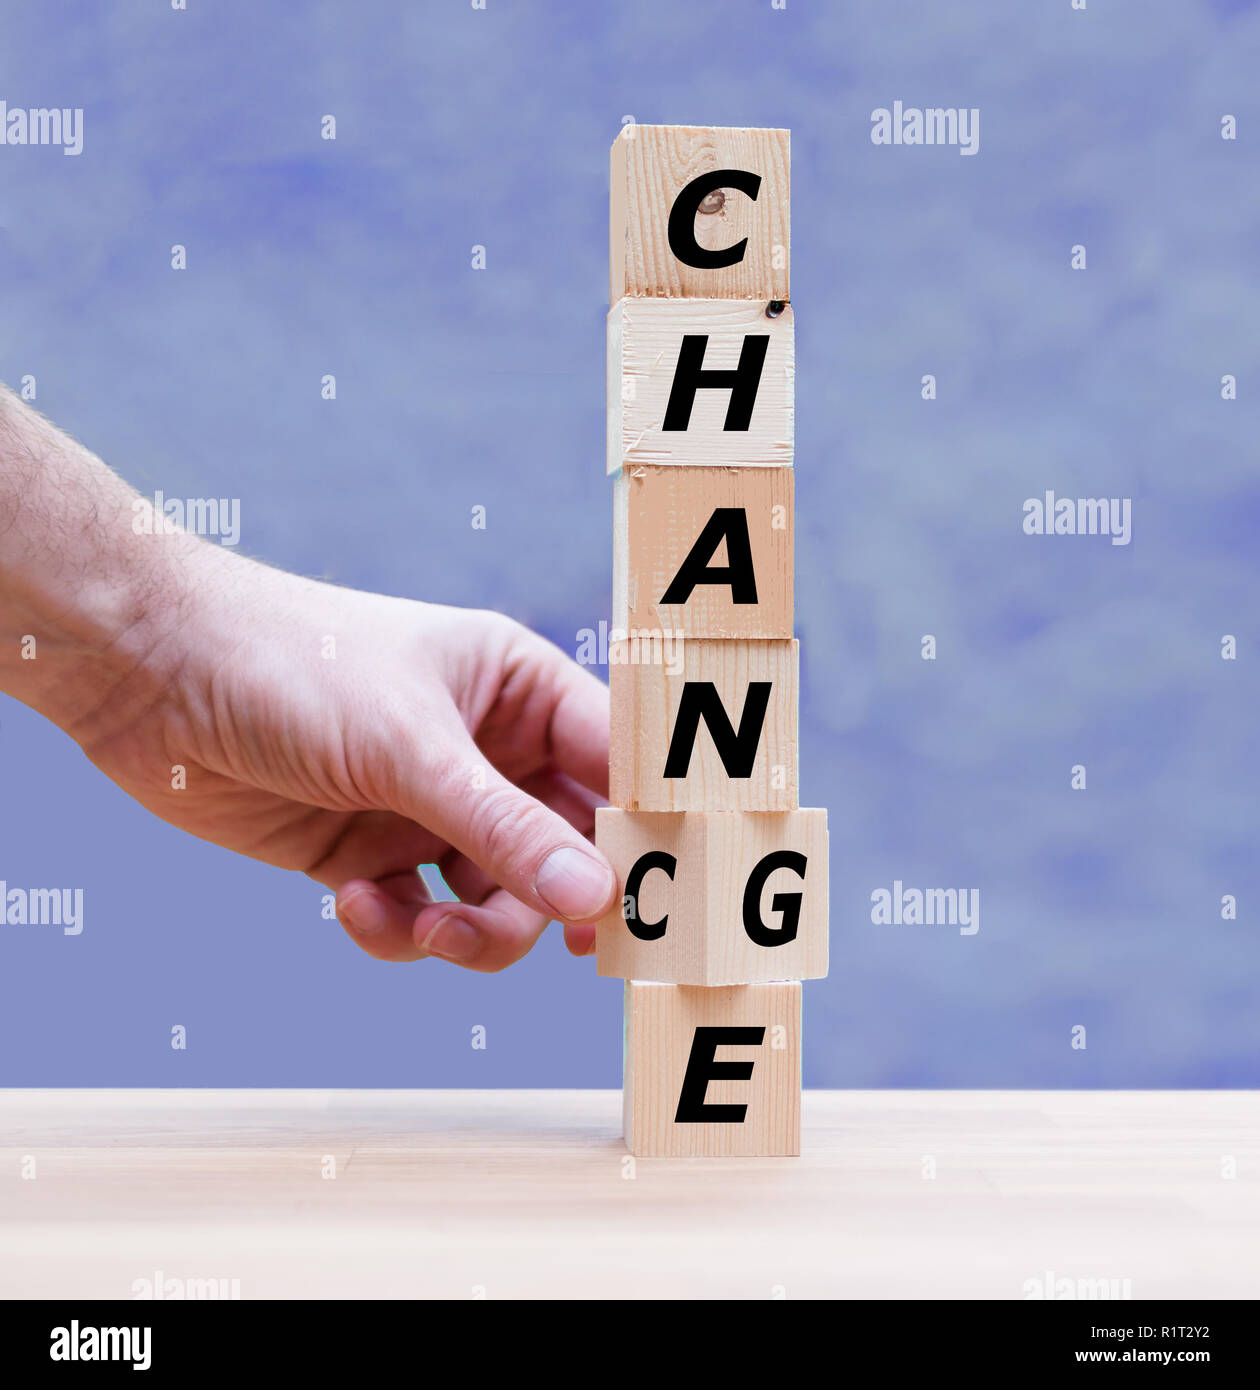 La main est le tournant d'un dés et change le mot 'Changer' pour 'Chance' Banque D'Images